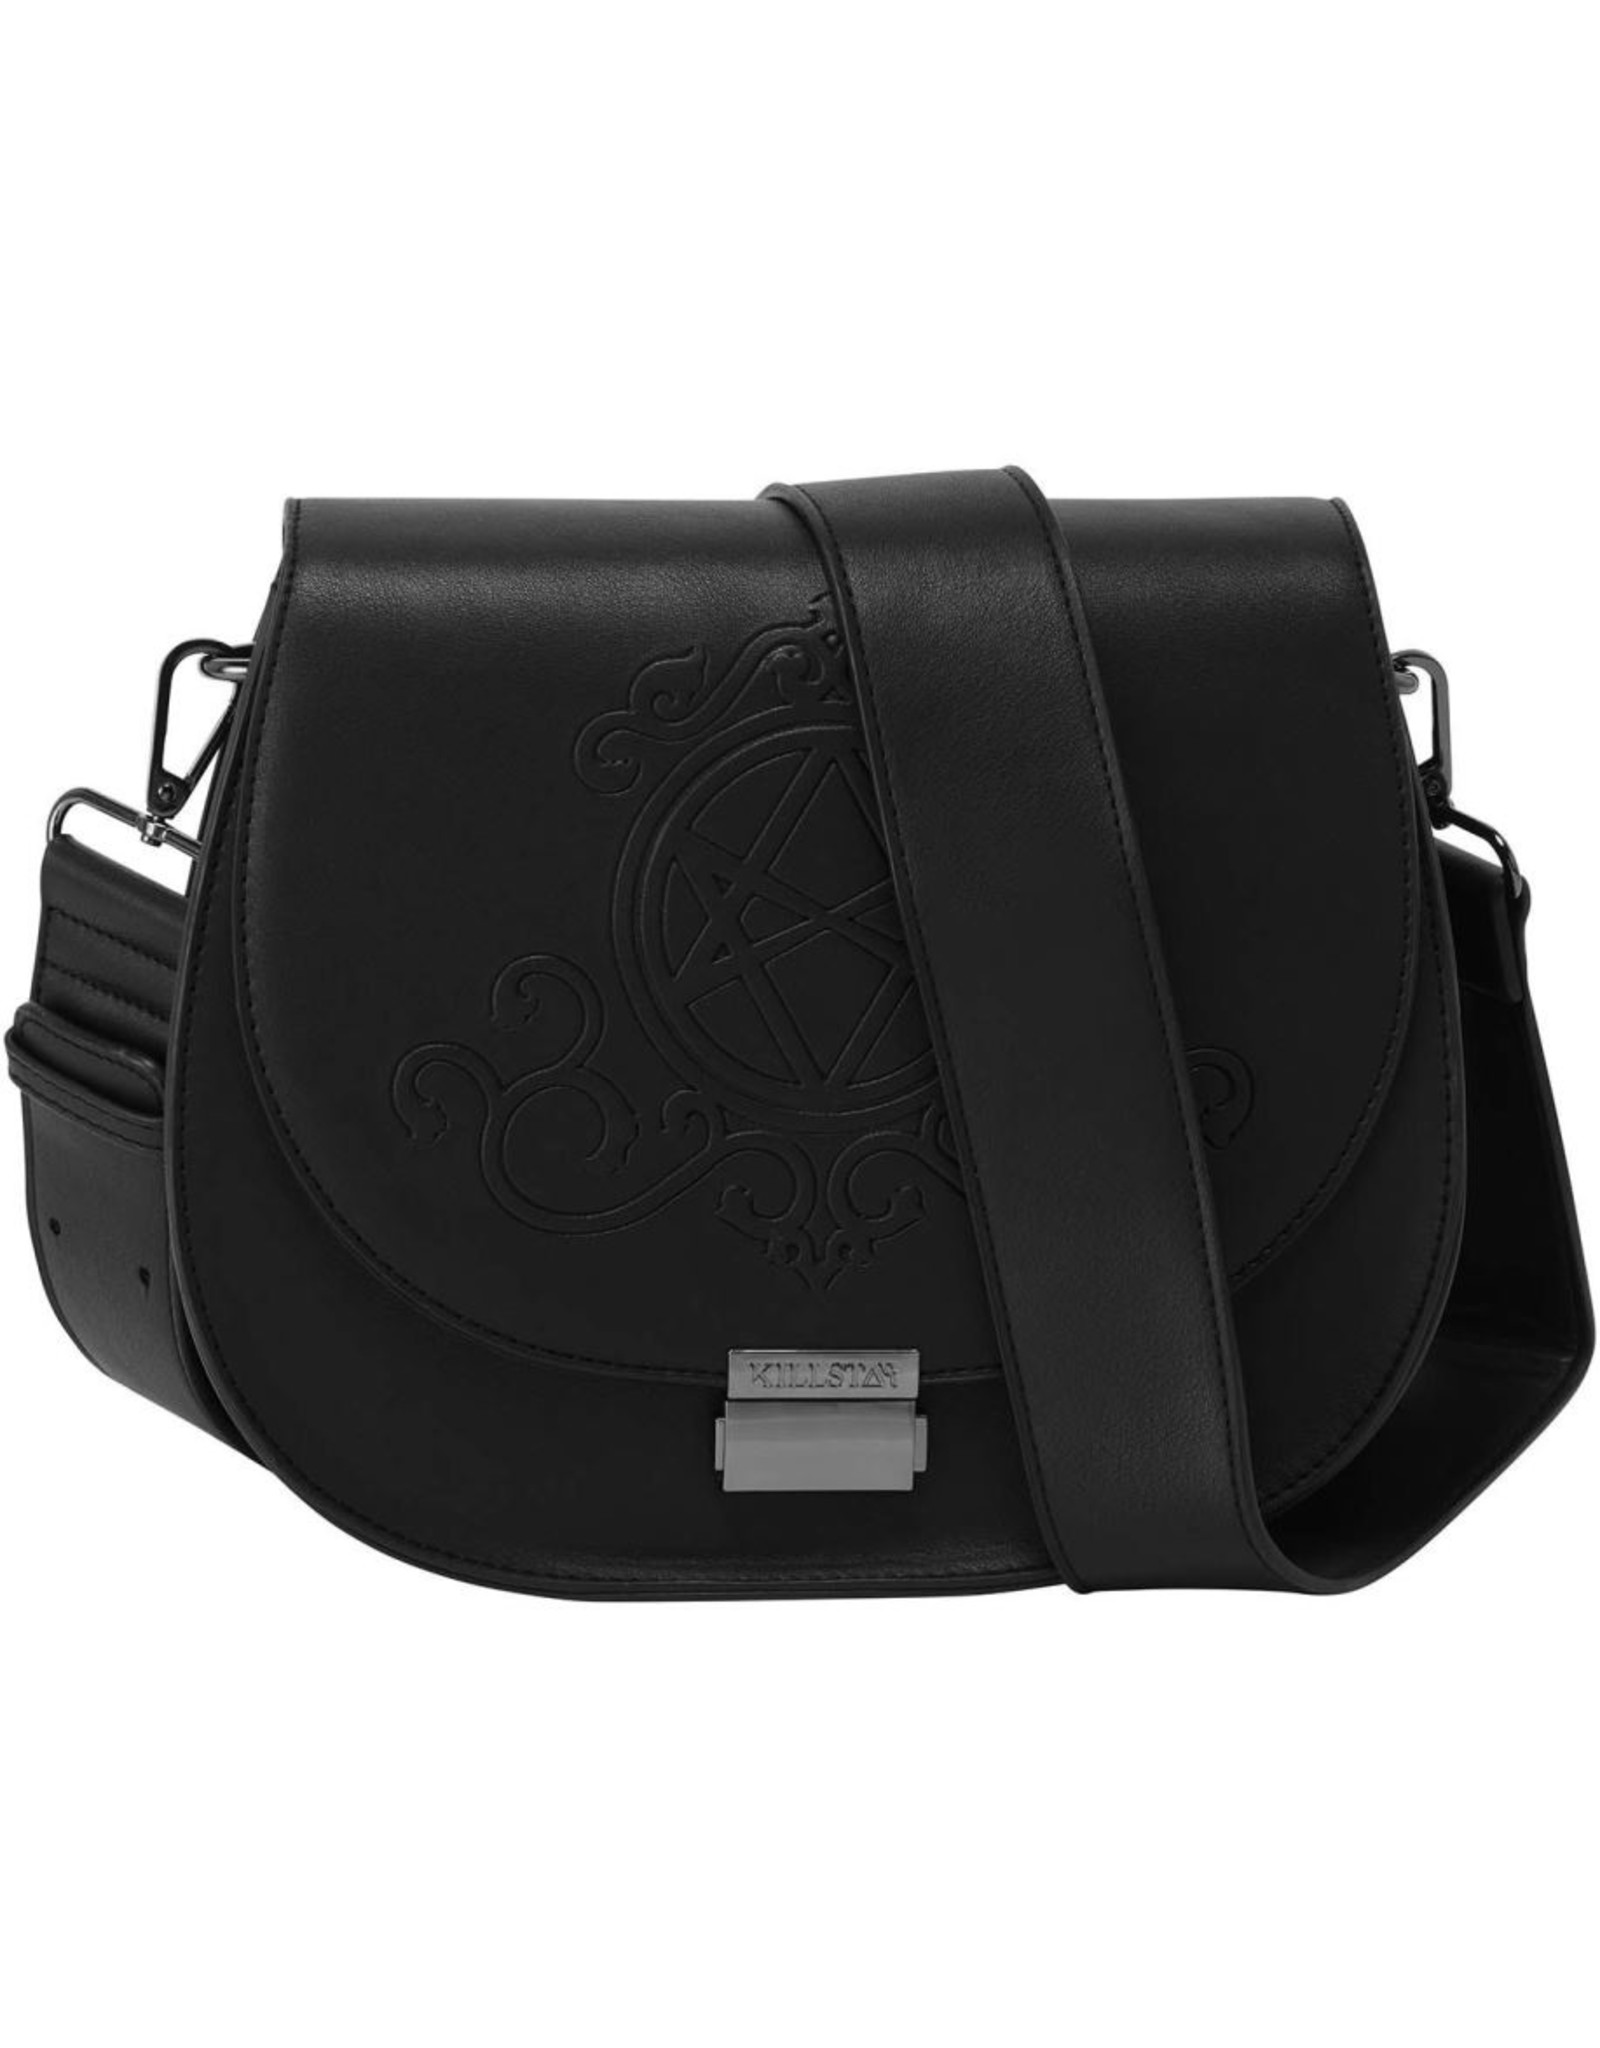 Killstar Gothic Bags Steampunk Bags - Killstar Austra handbag